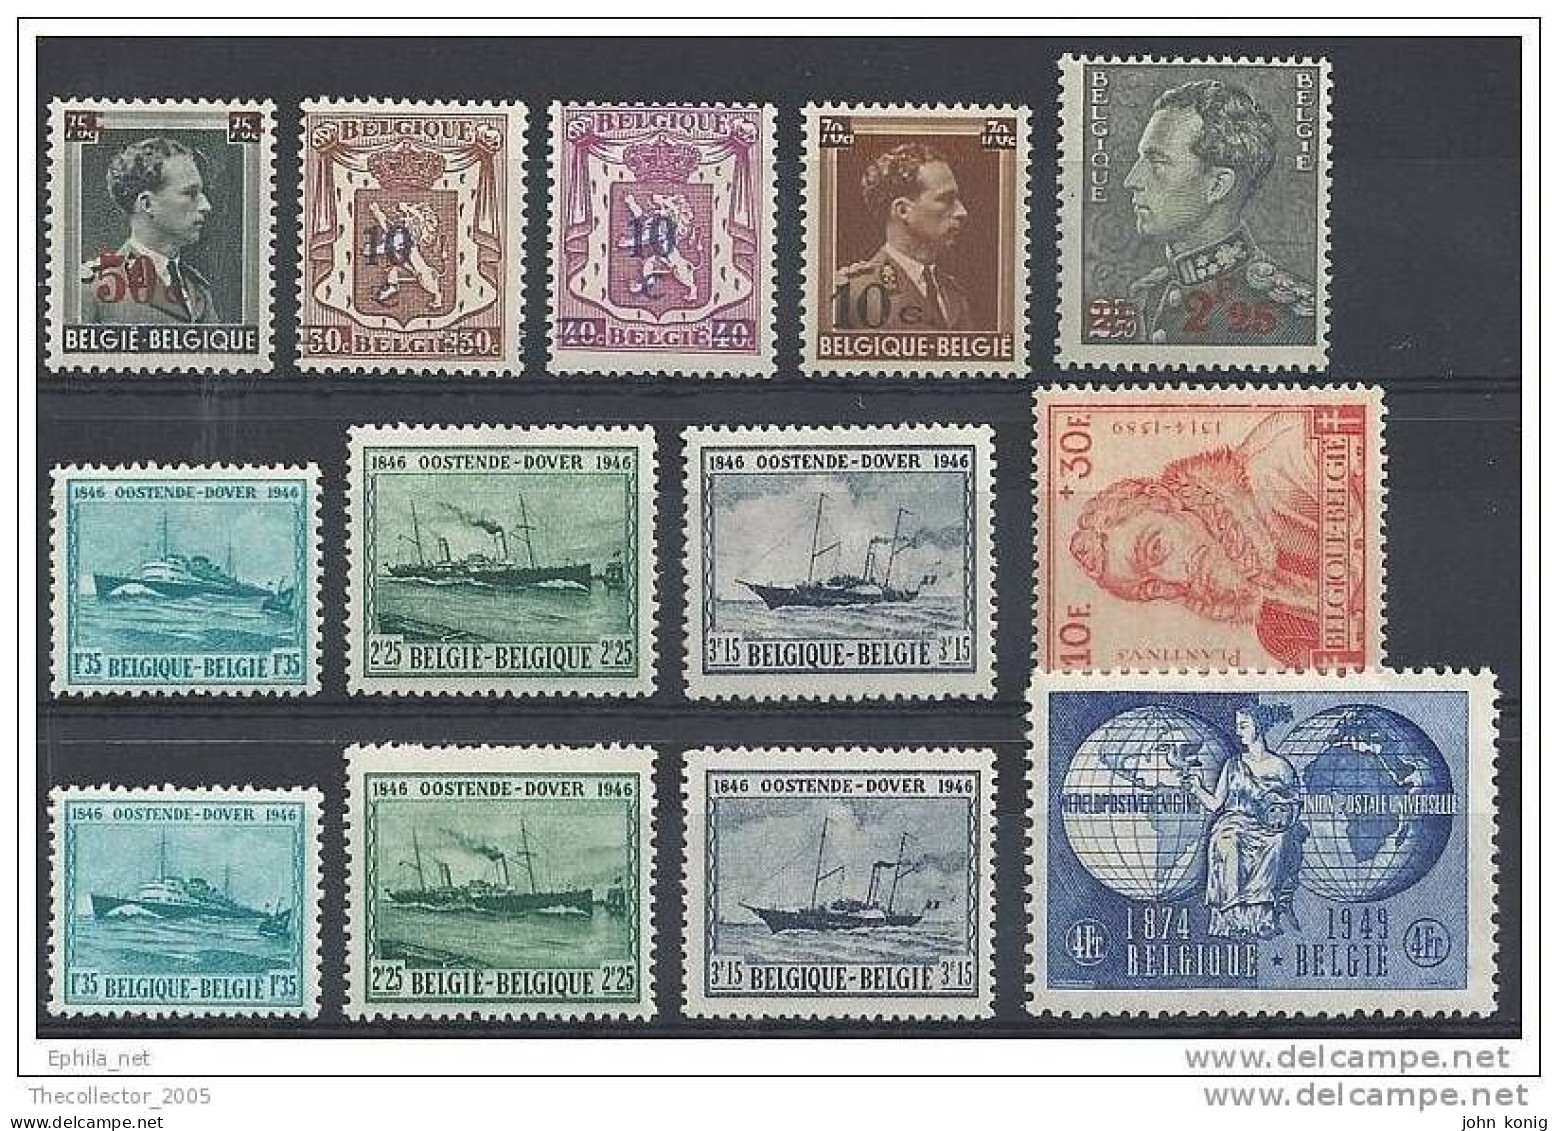 Belgio -Belgie-Belgique - Old-classic Stamps - Rare Lot - Sammlungen